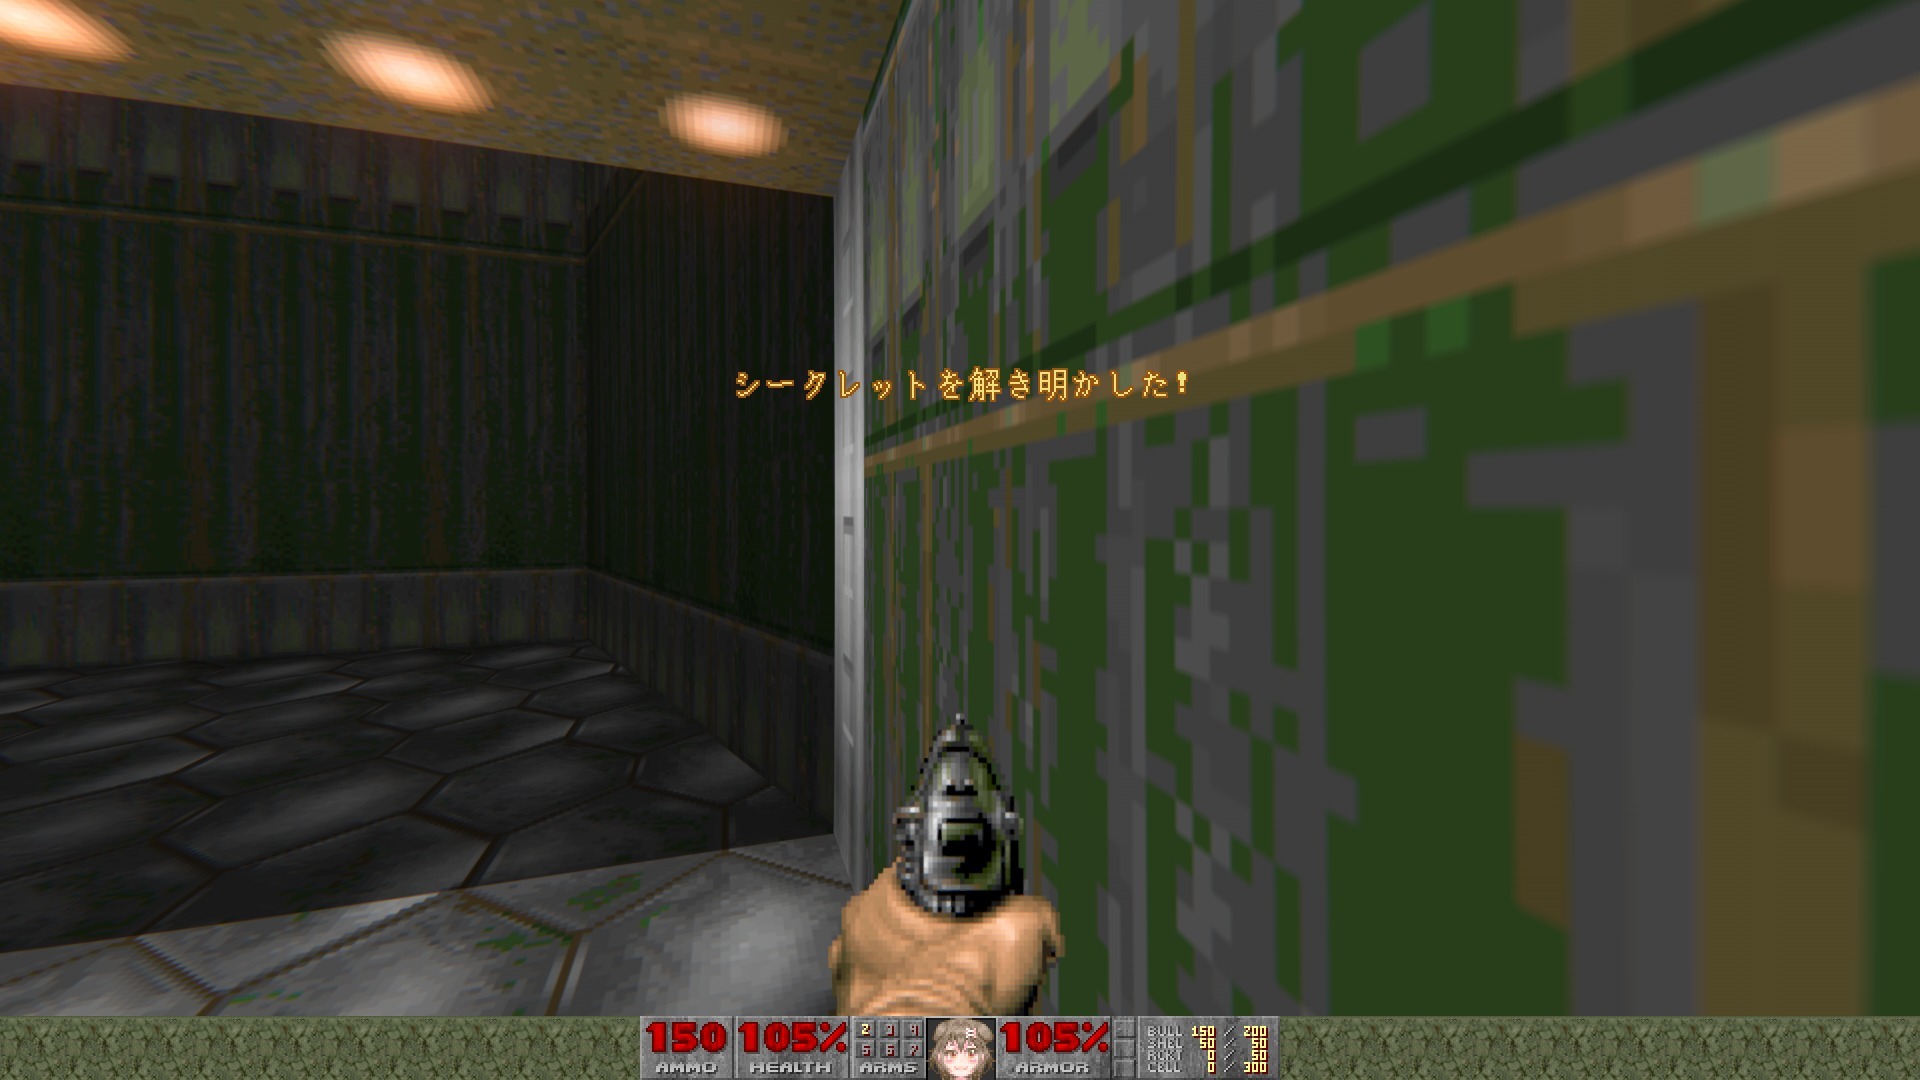 これぞまさしく Doog 初代 Doom の顔表示をドゥームガイから戌神ころねに変更するmodが公開 Game Spark 国内 海外ゲーム情報サイト